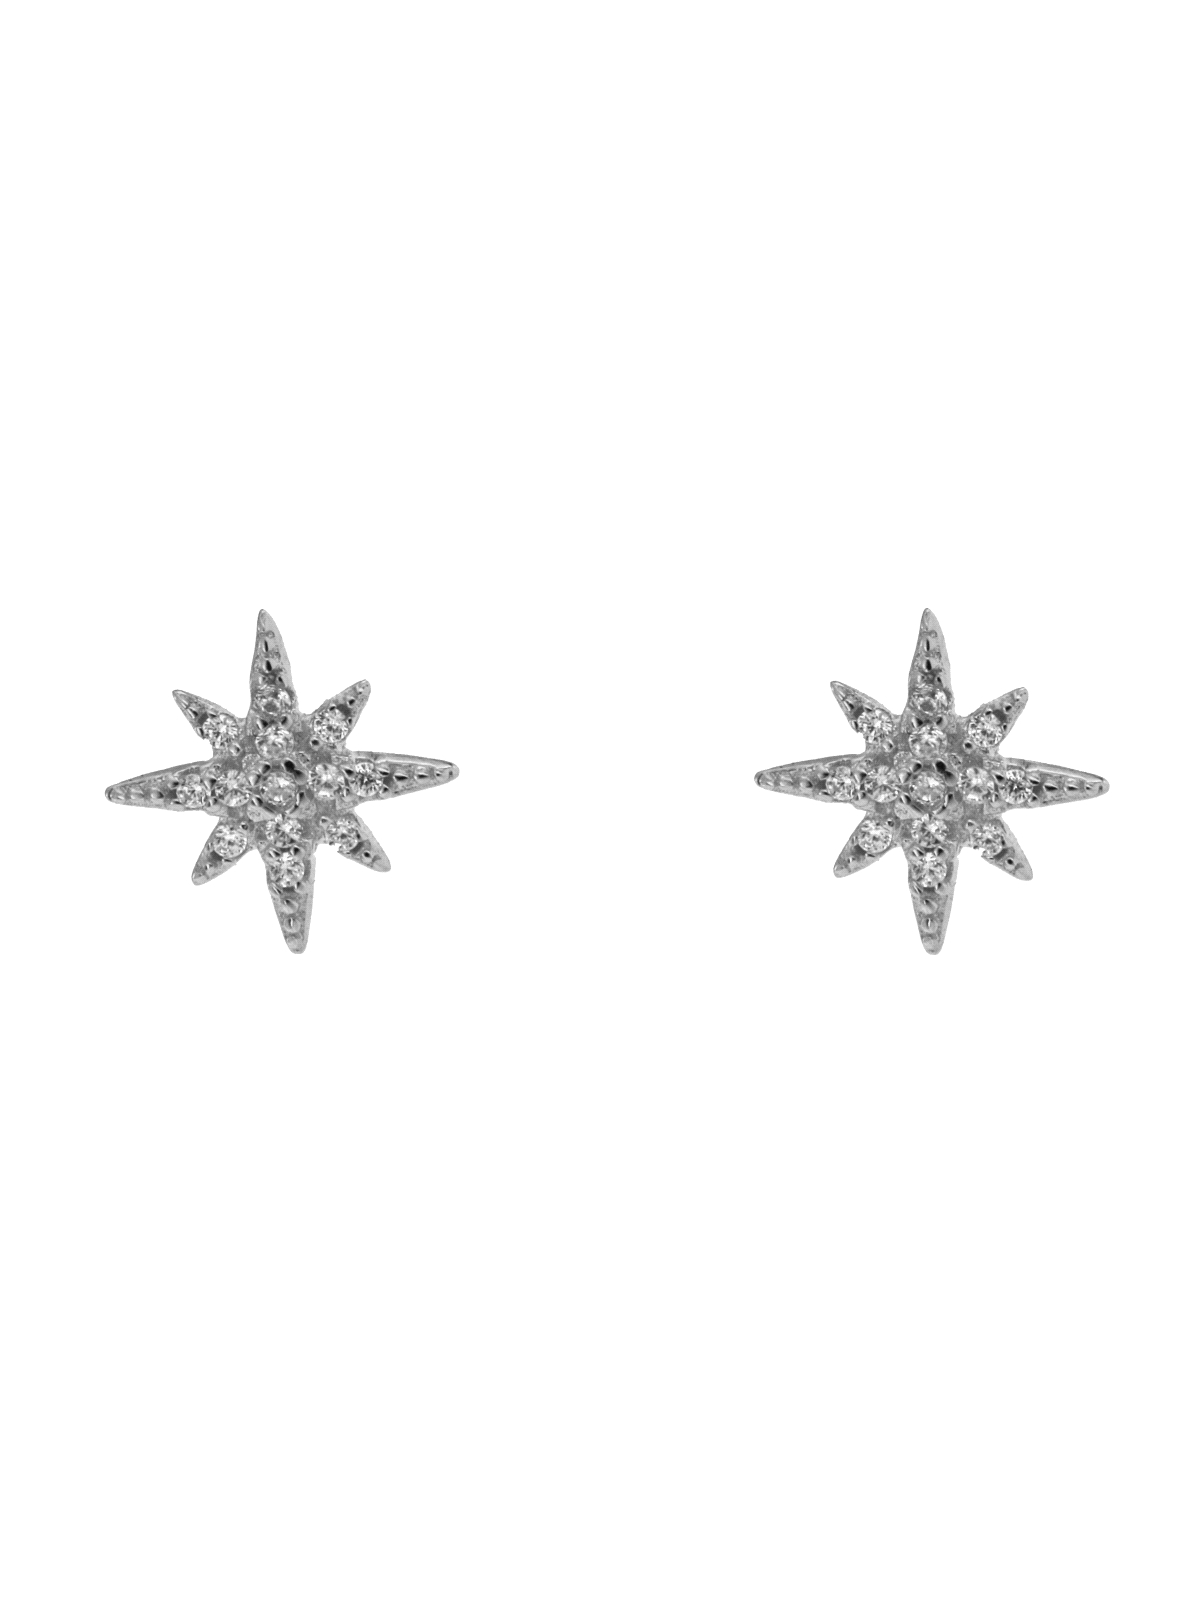 Pendientes de presión en forma de estrella polar decorada con circonitas de Plata de Ley 925 mm. ¡Brillarás más que la propia es